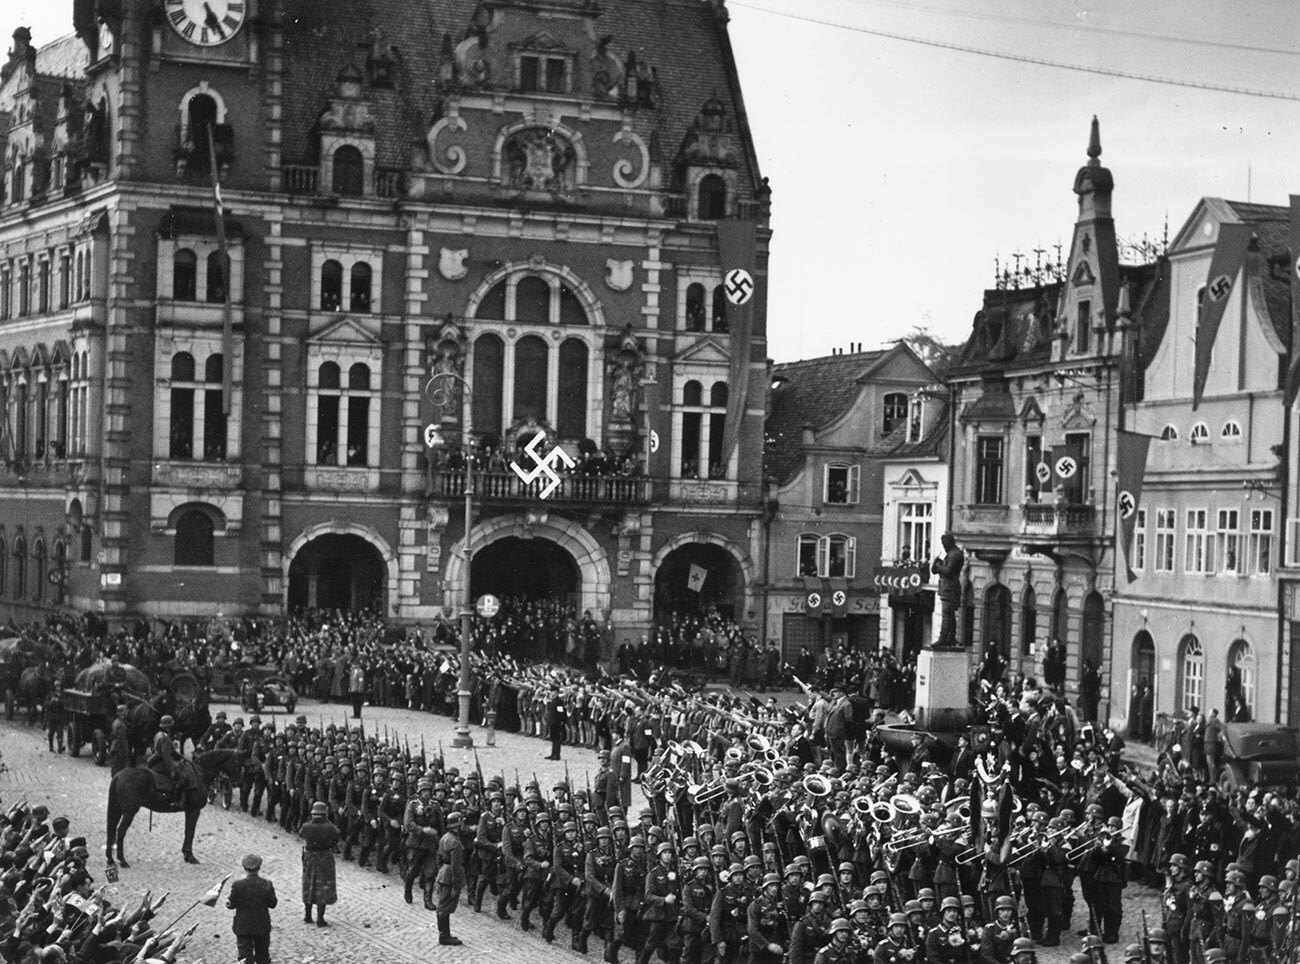 Tropas del ejército alemán entran en territorio checoslovaco y desfilan en la plaza de la ciudad de Rumberg, que ha sido decorada con banderas con la cruz gamada.